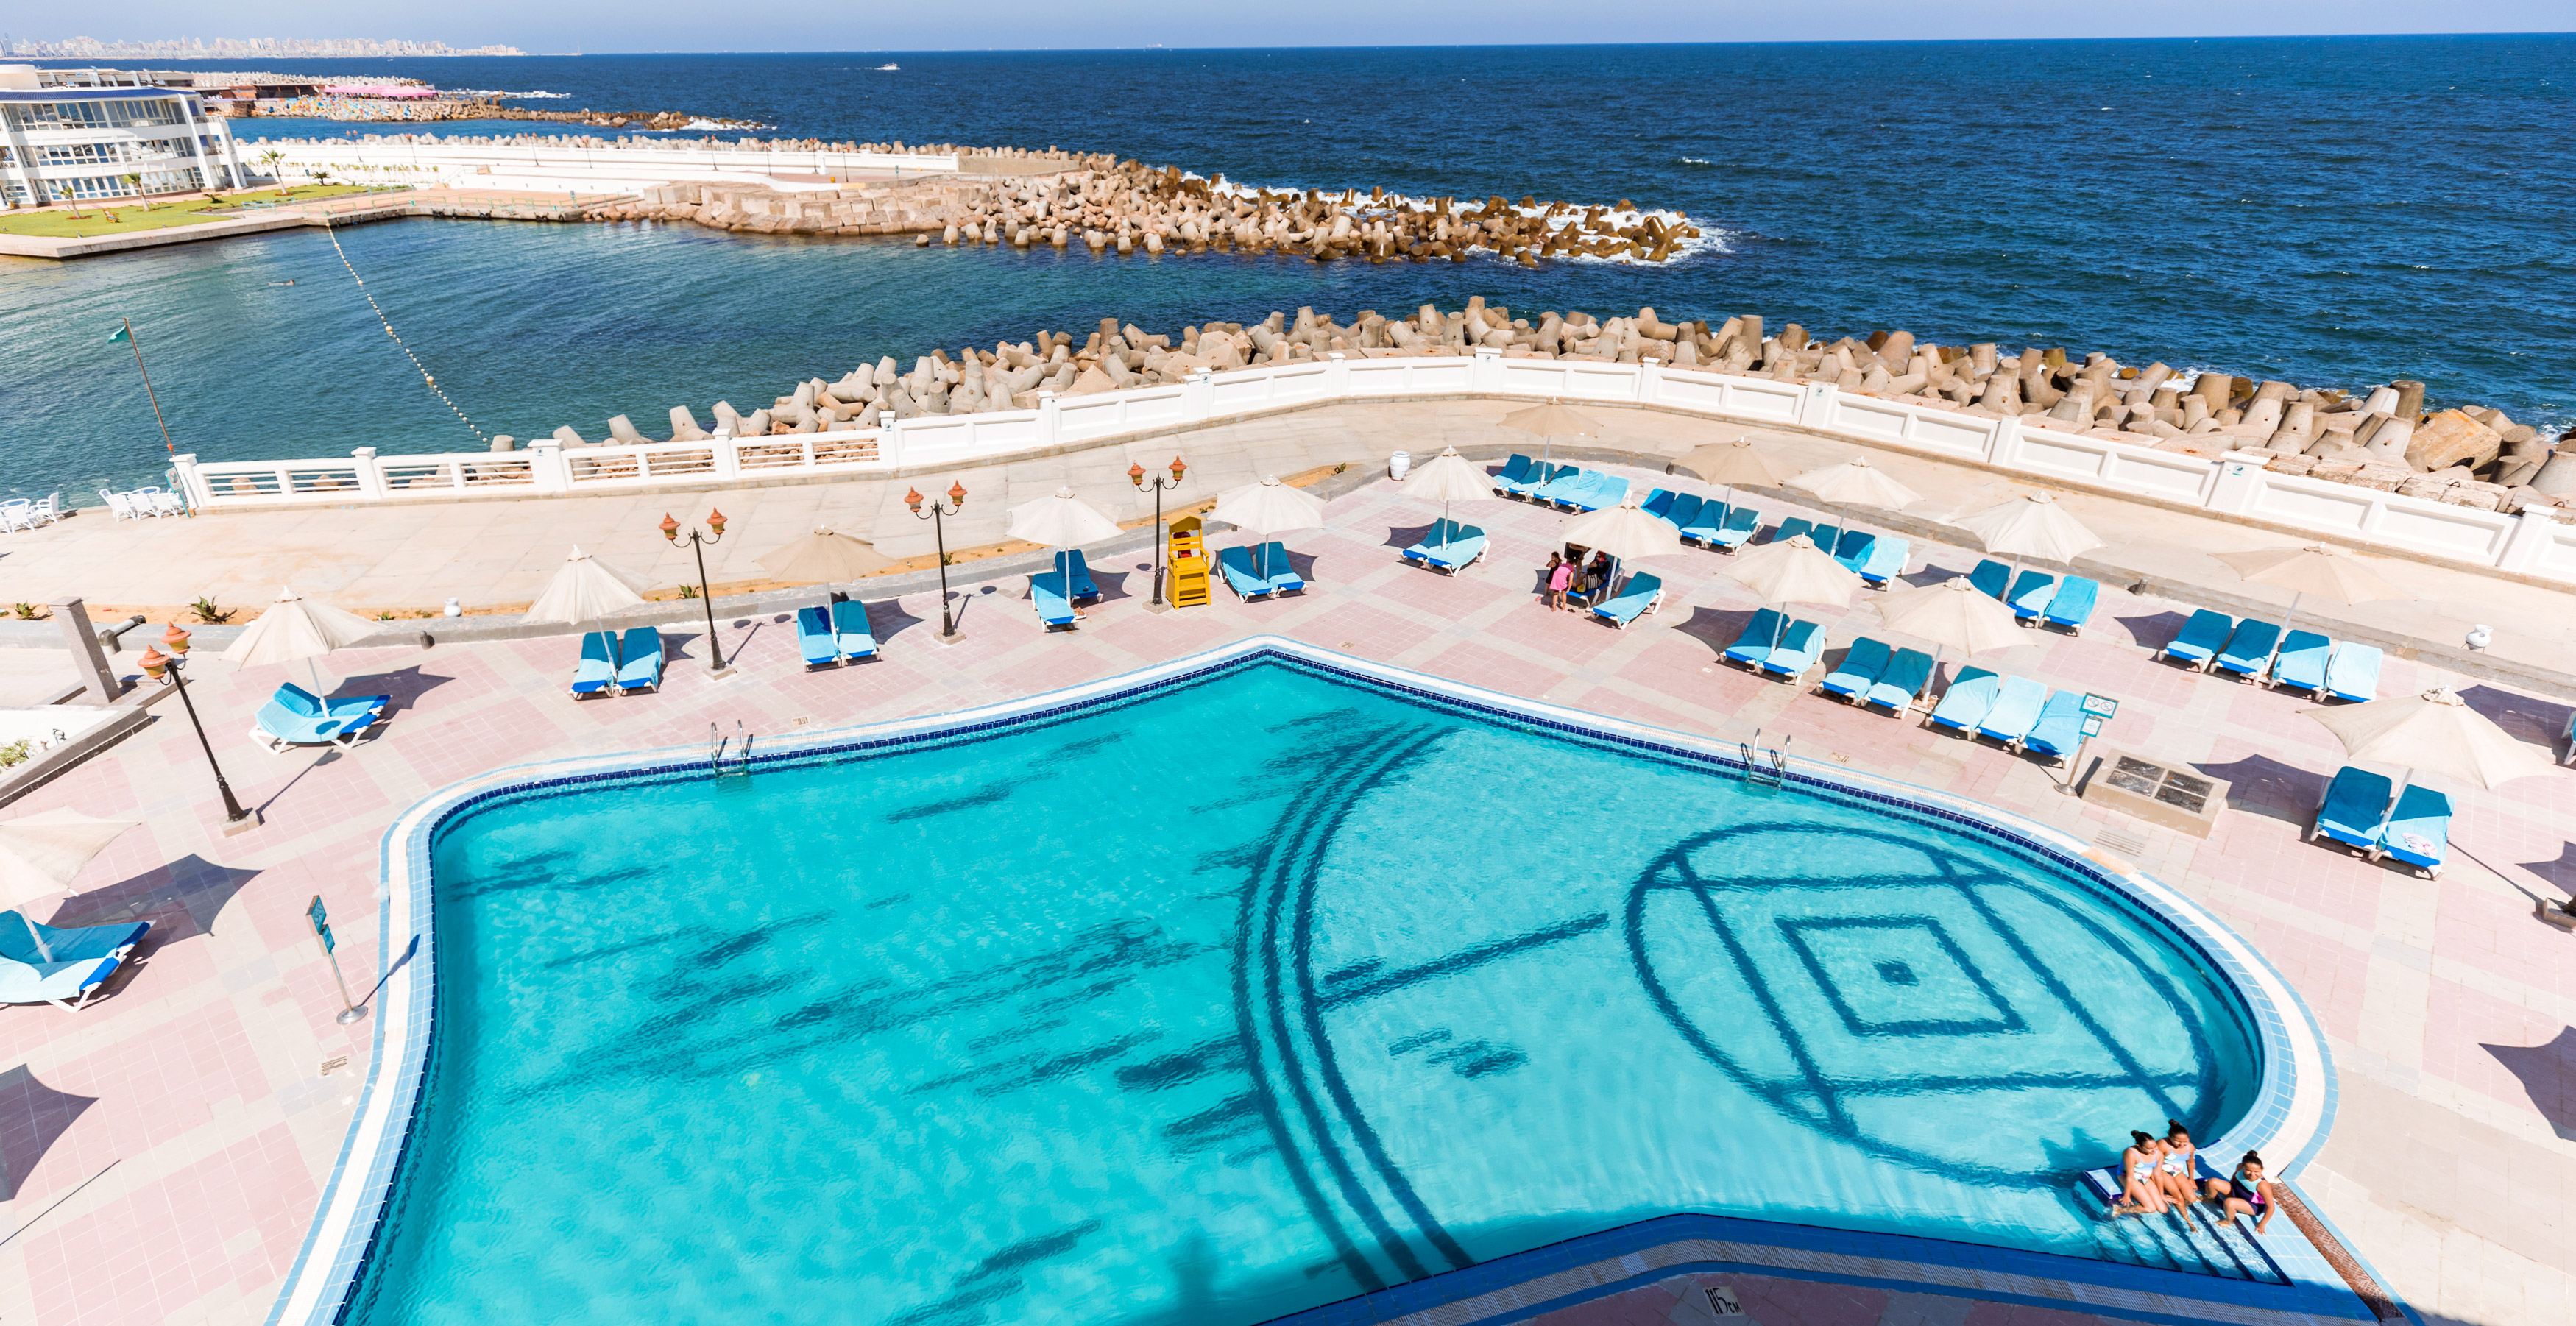 Sunrise Resorts & Cruises